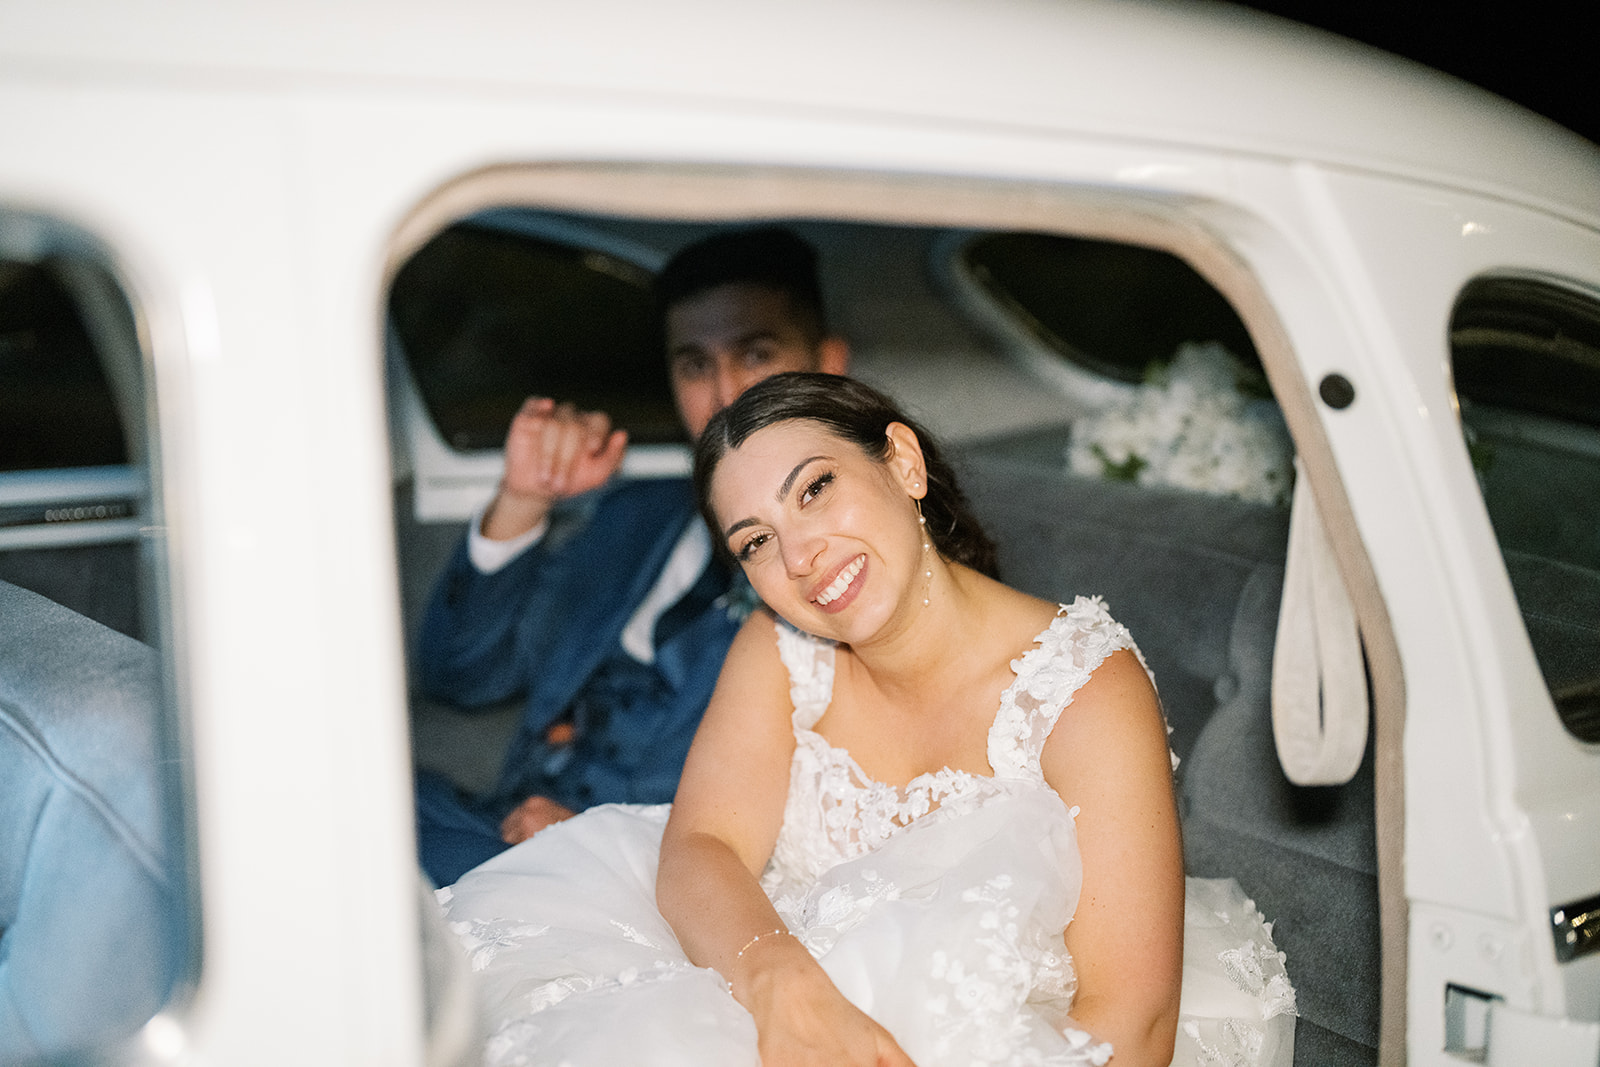 morais vineyard winery virginia bealeton wedding just married bride and groom exit bubbles blowing cute vintage car